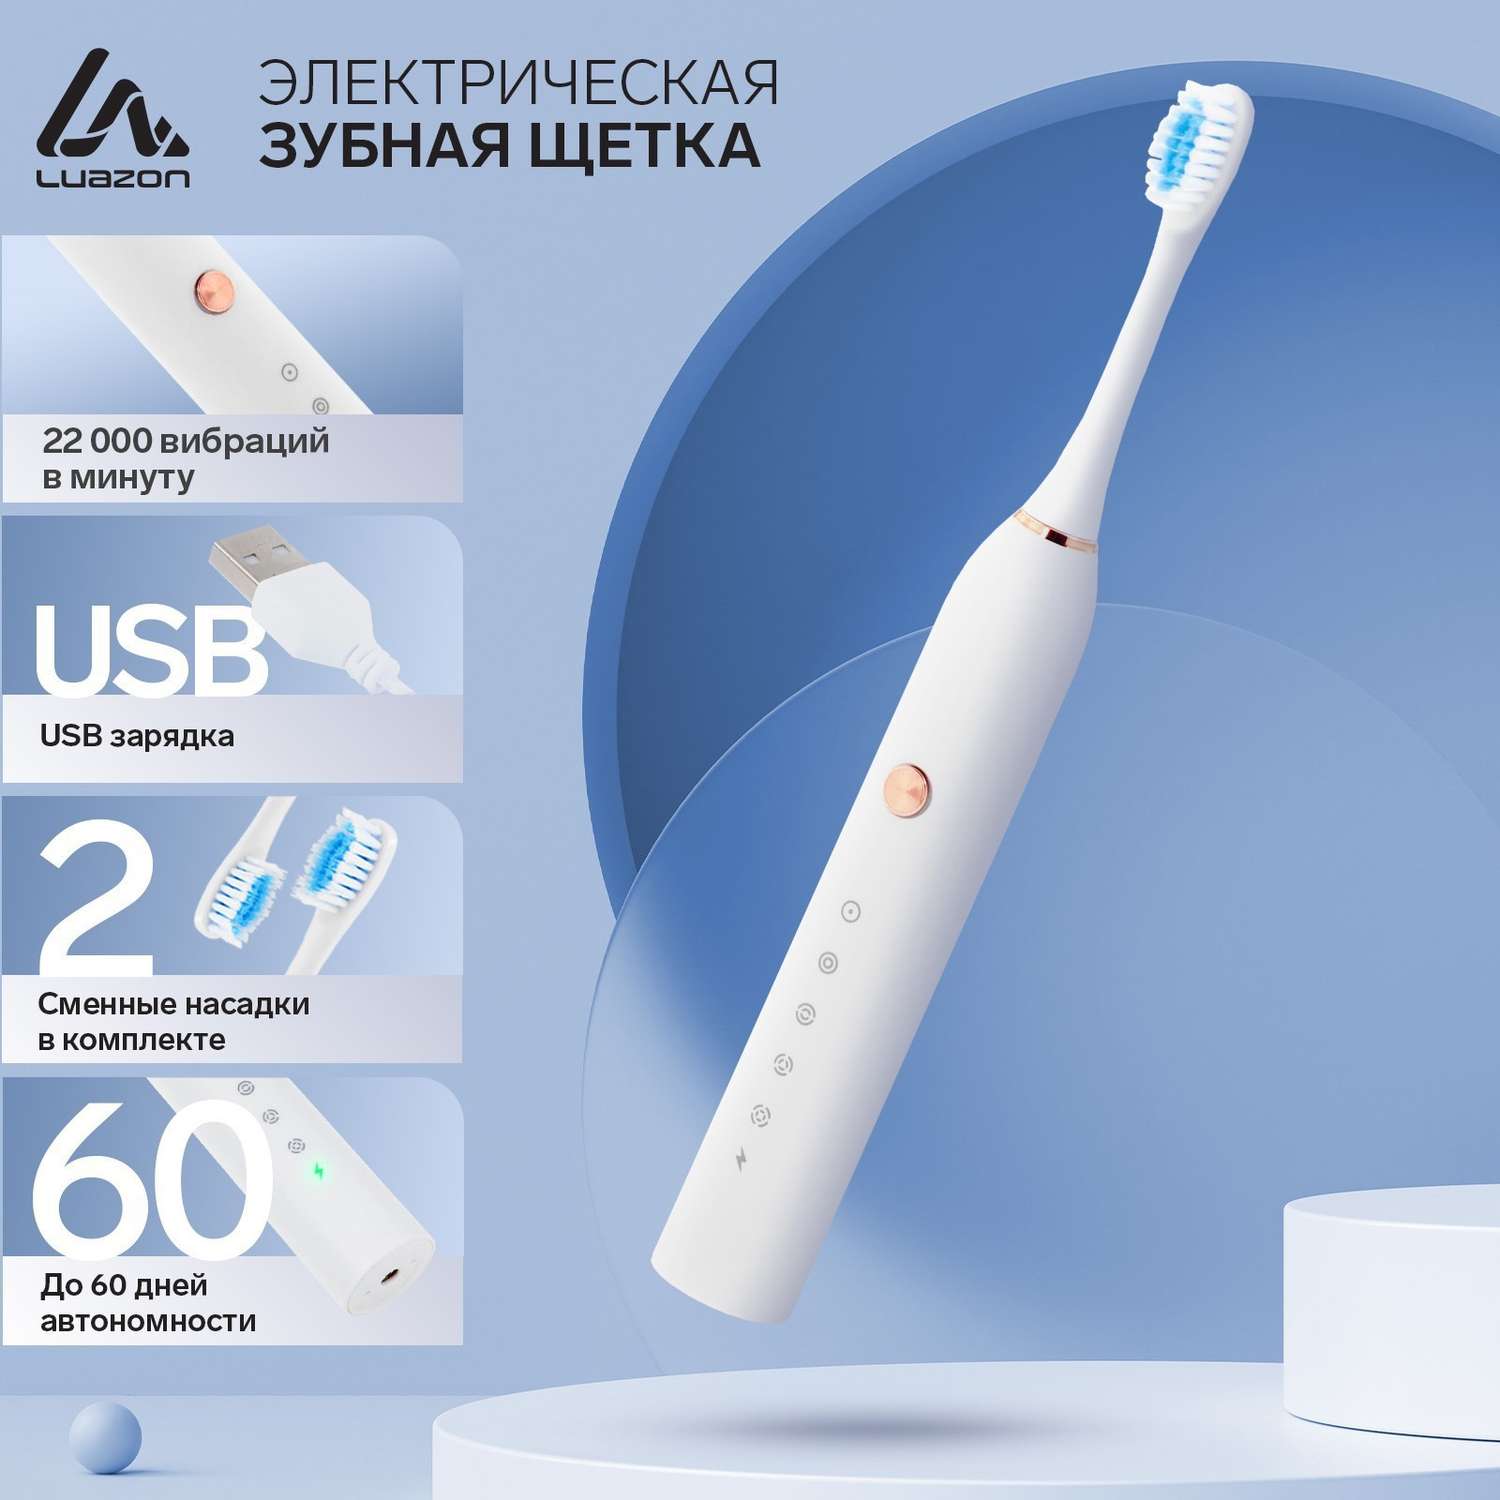 Электрическая зубная щётка Luazon Home LP005 вибрационная 2 насадки от АКБ - фото 2